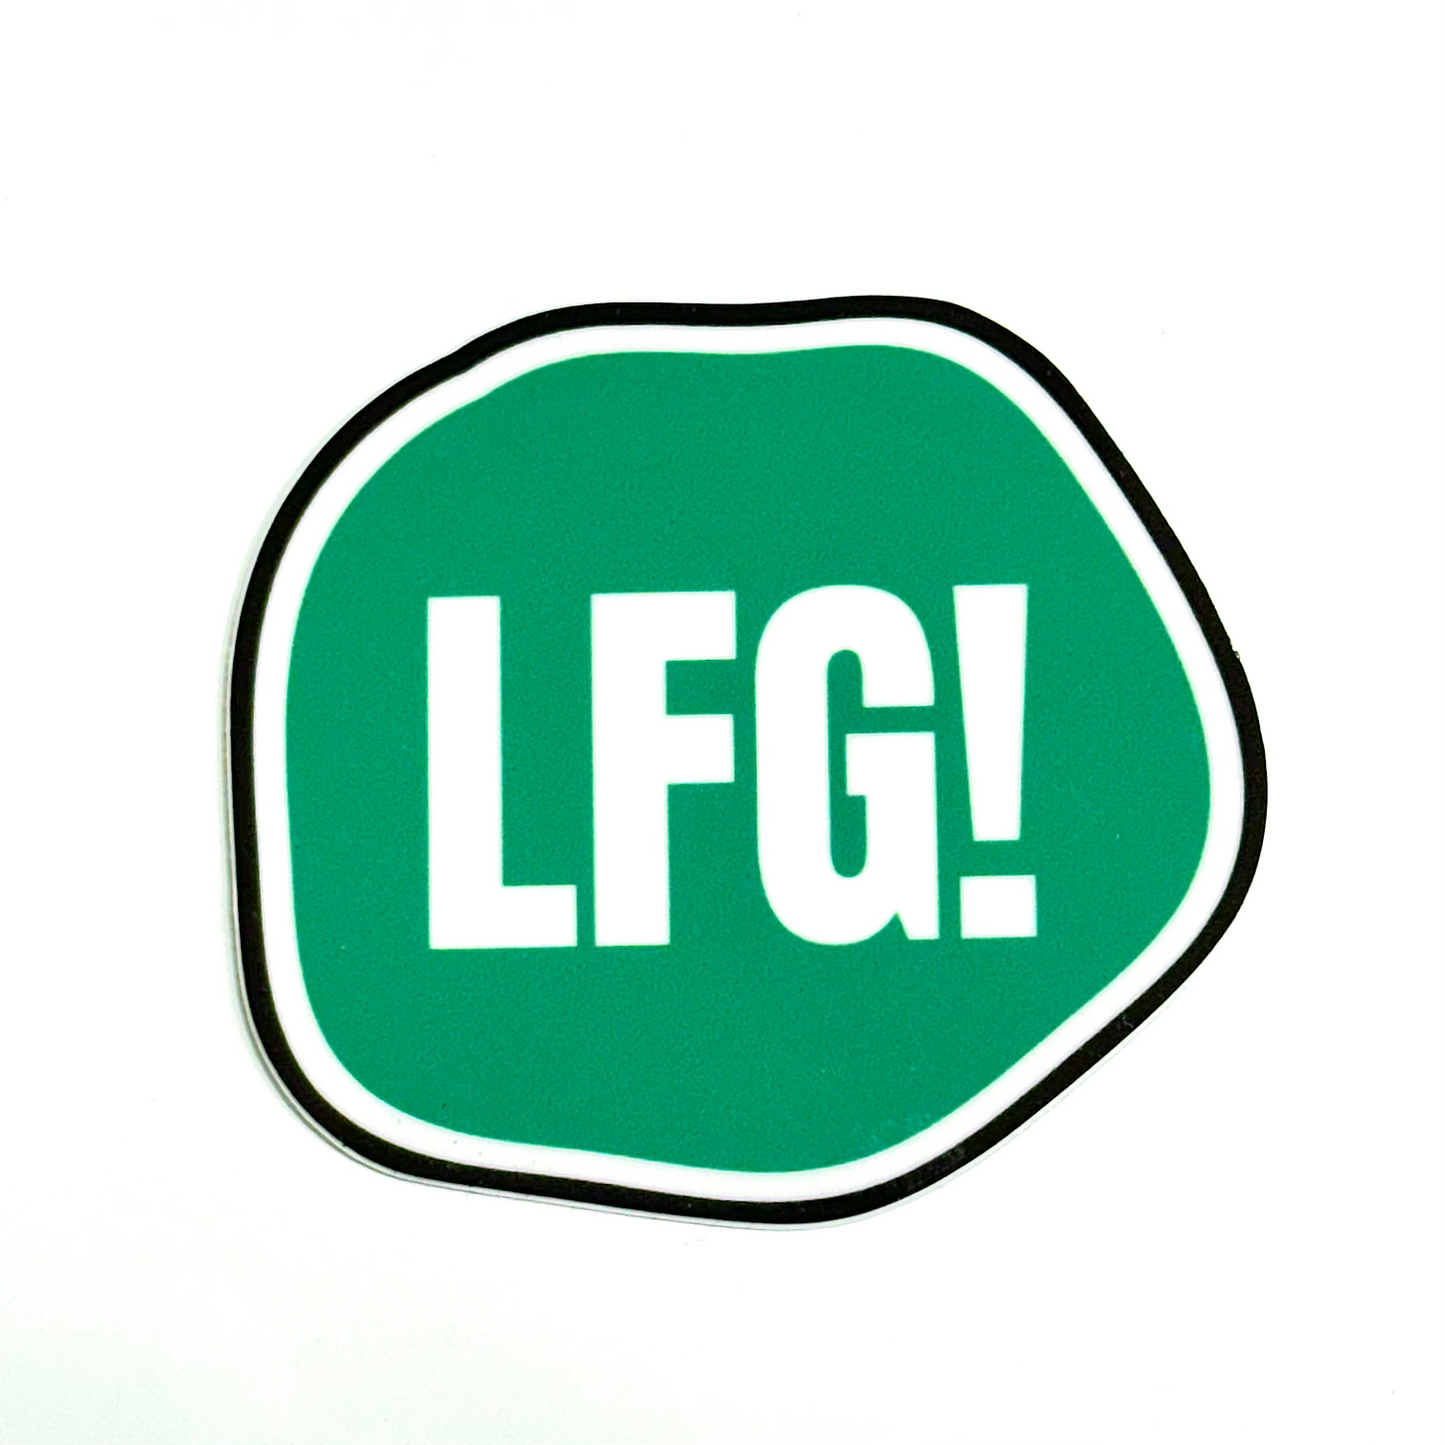 LFG! - Funny Motivational Vinyl Sticker